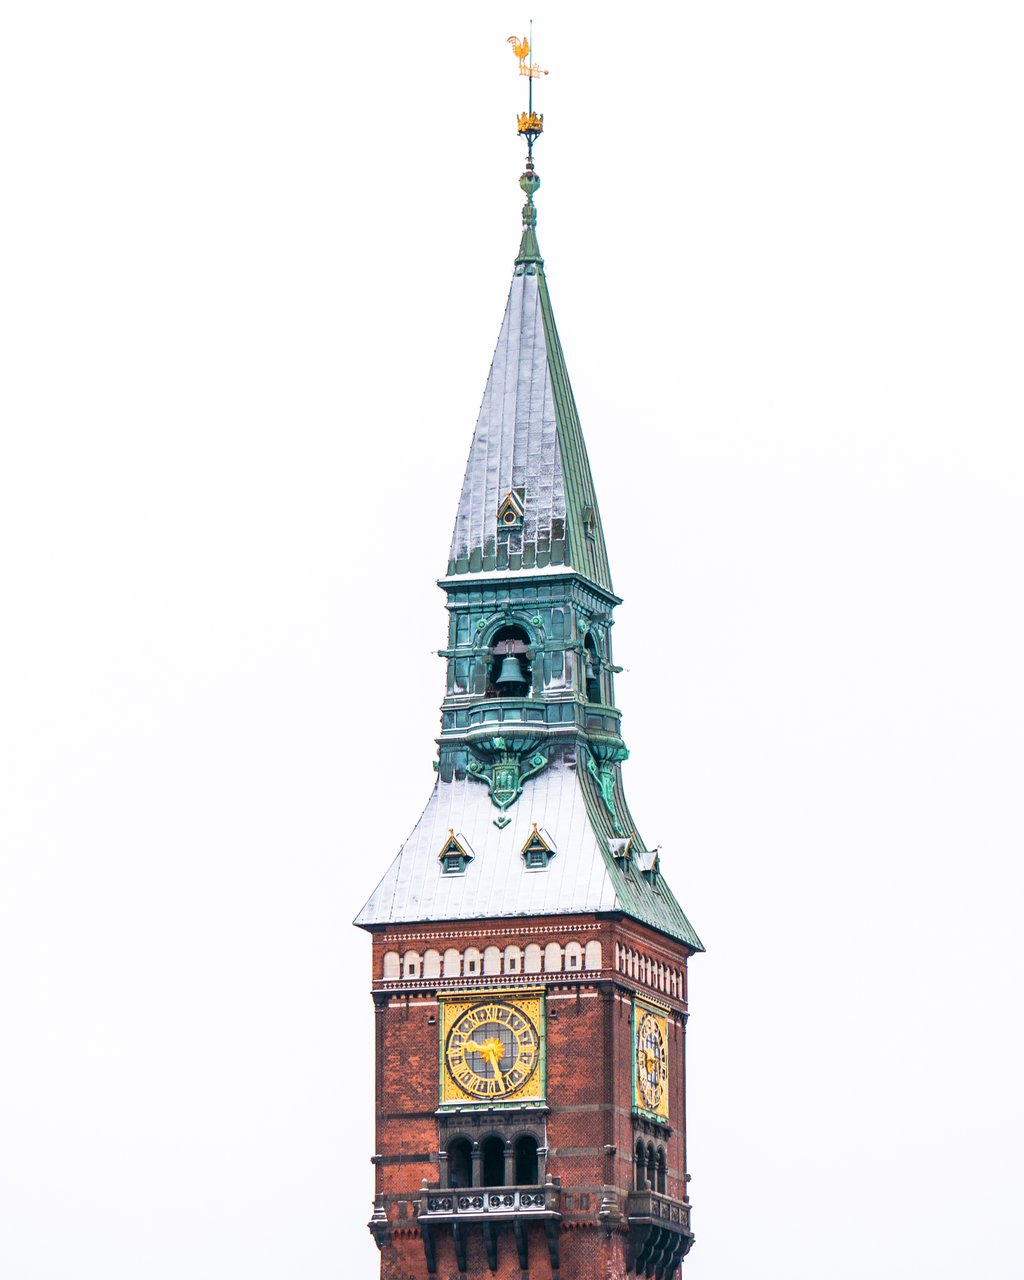 Københavns Rådhustårn